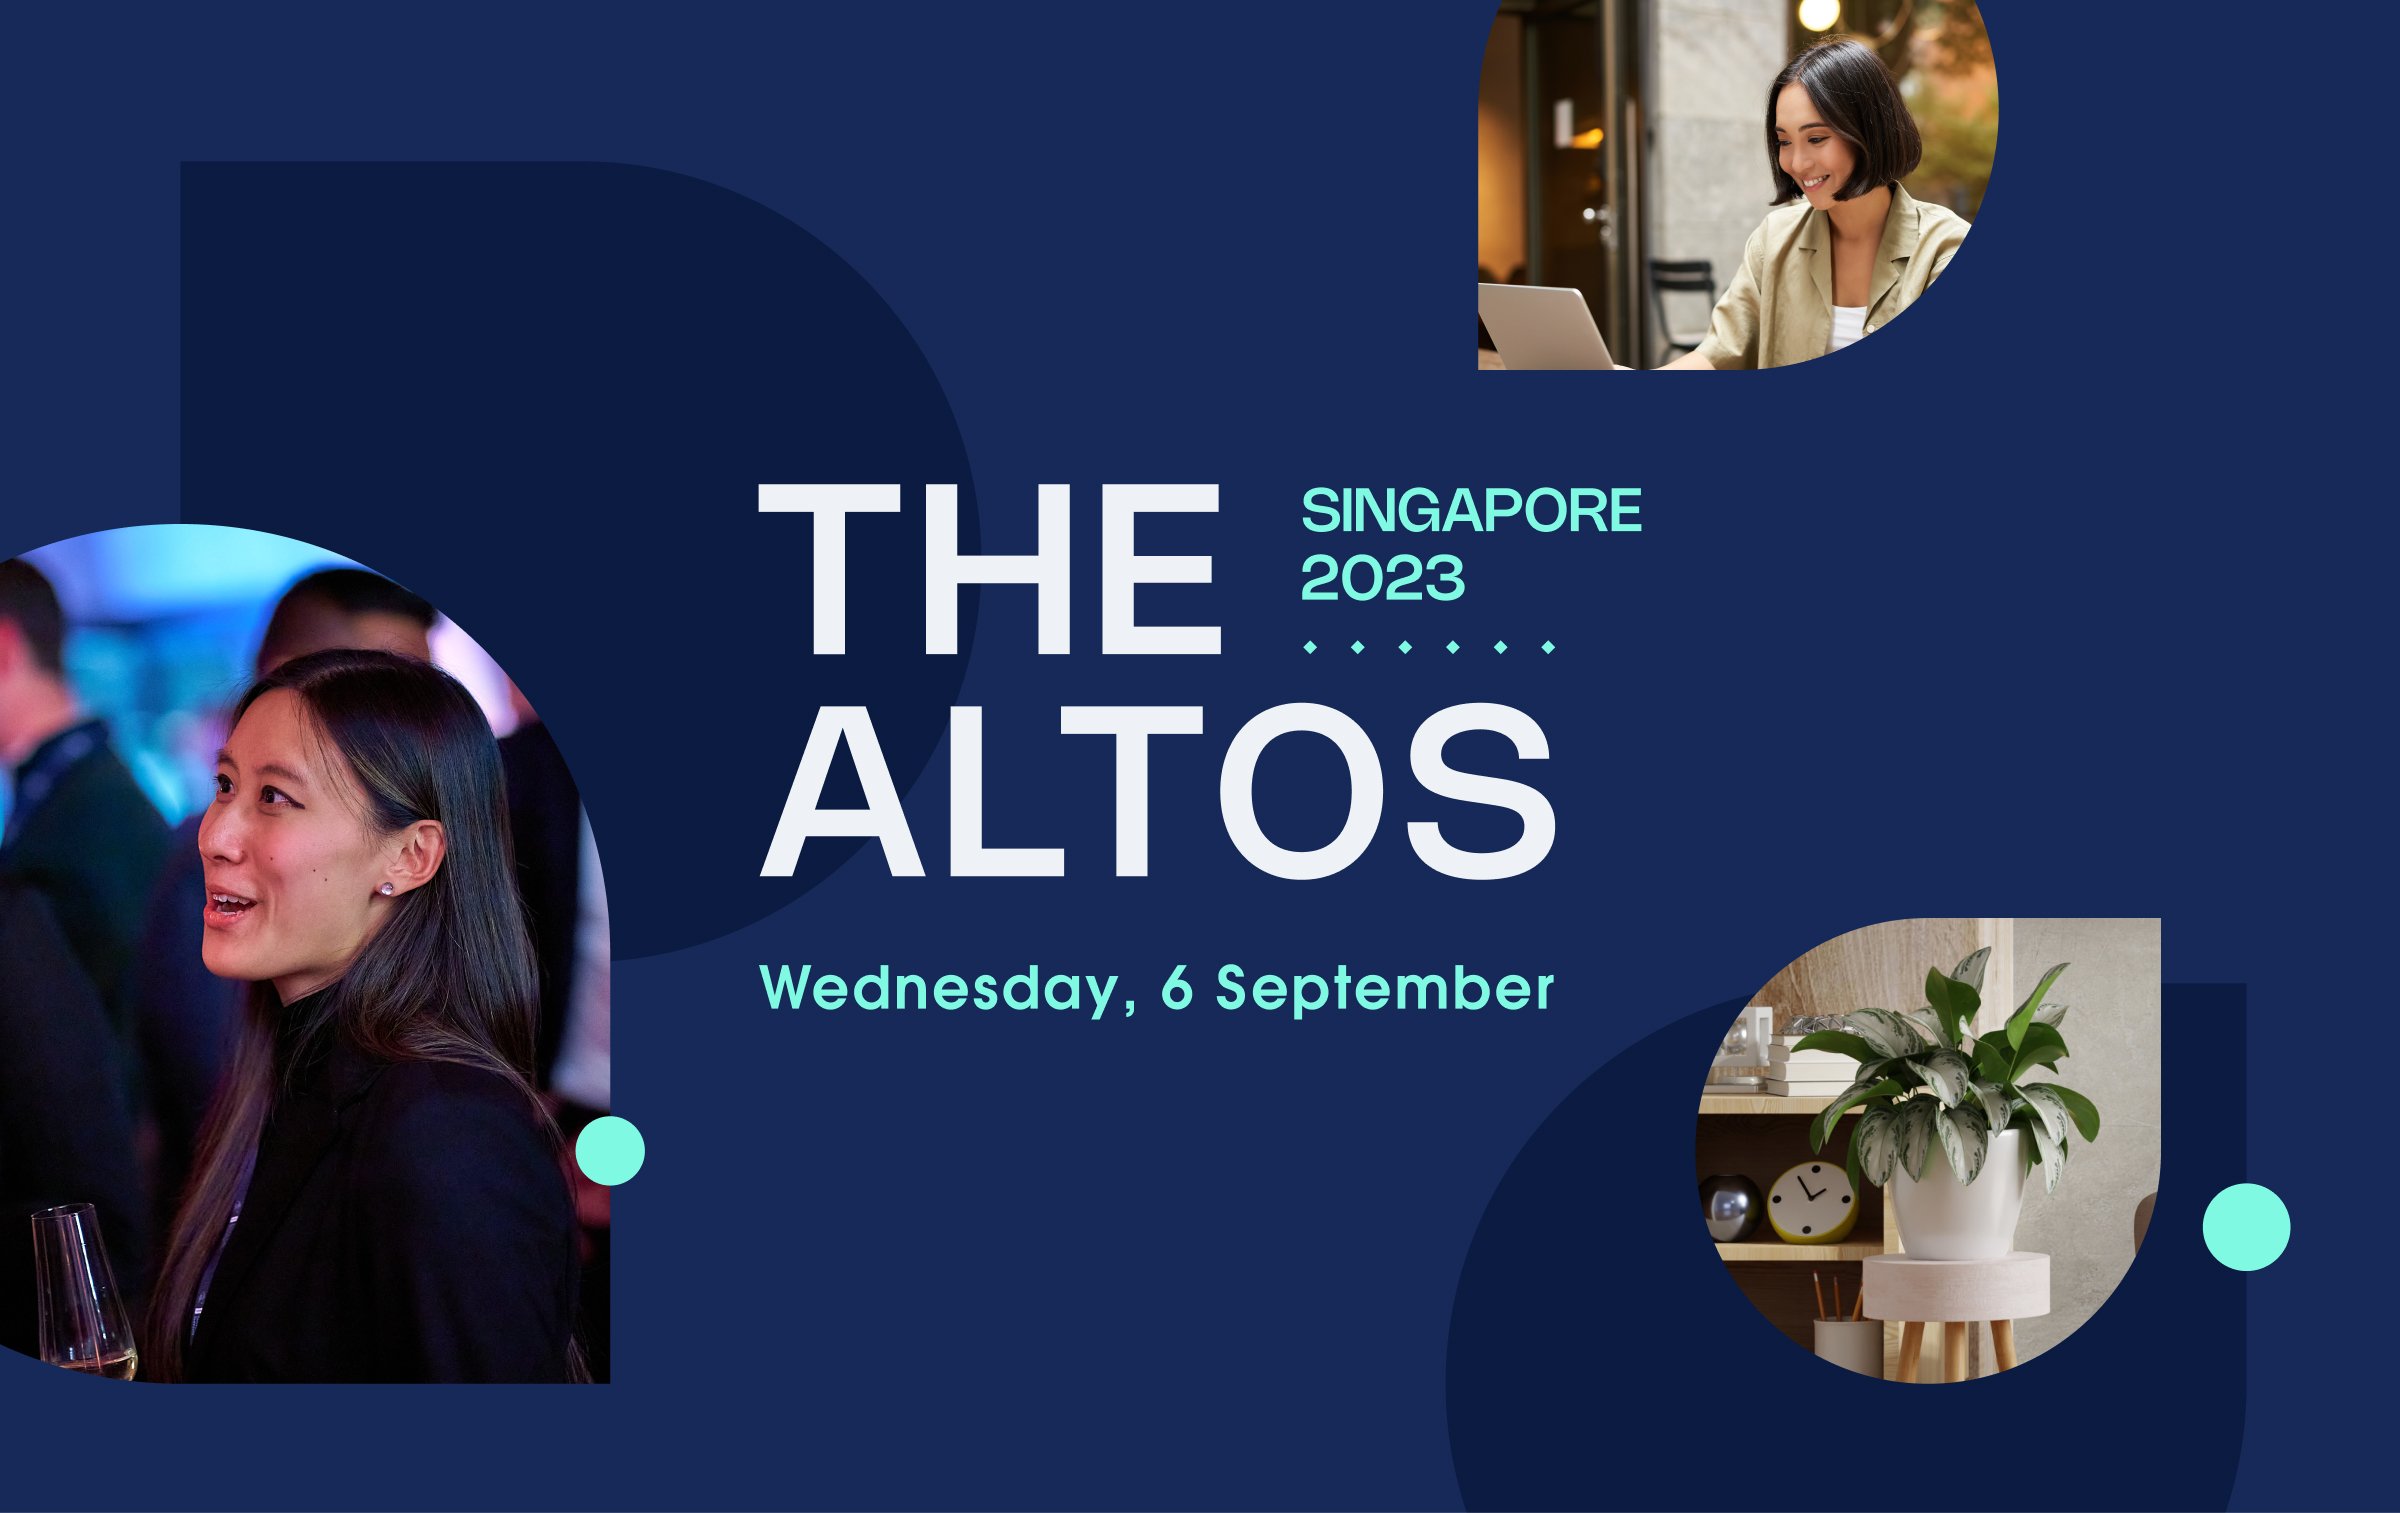 The Altos Singapore 2023